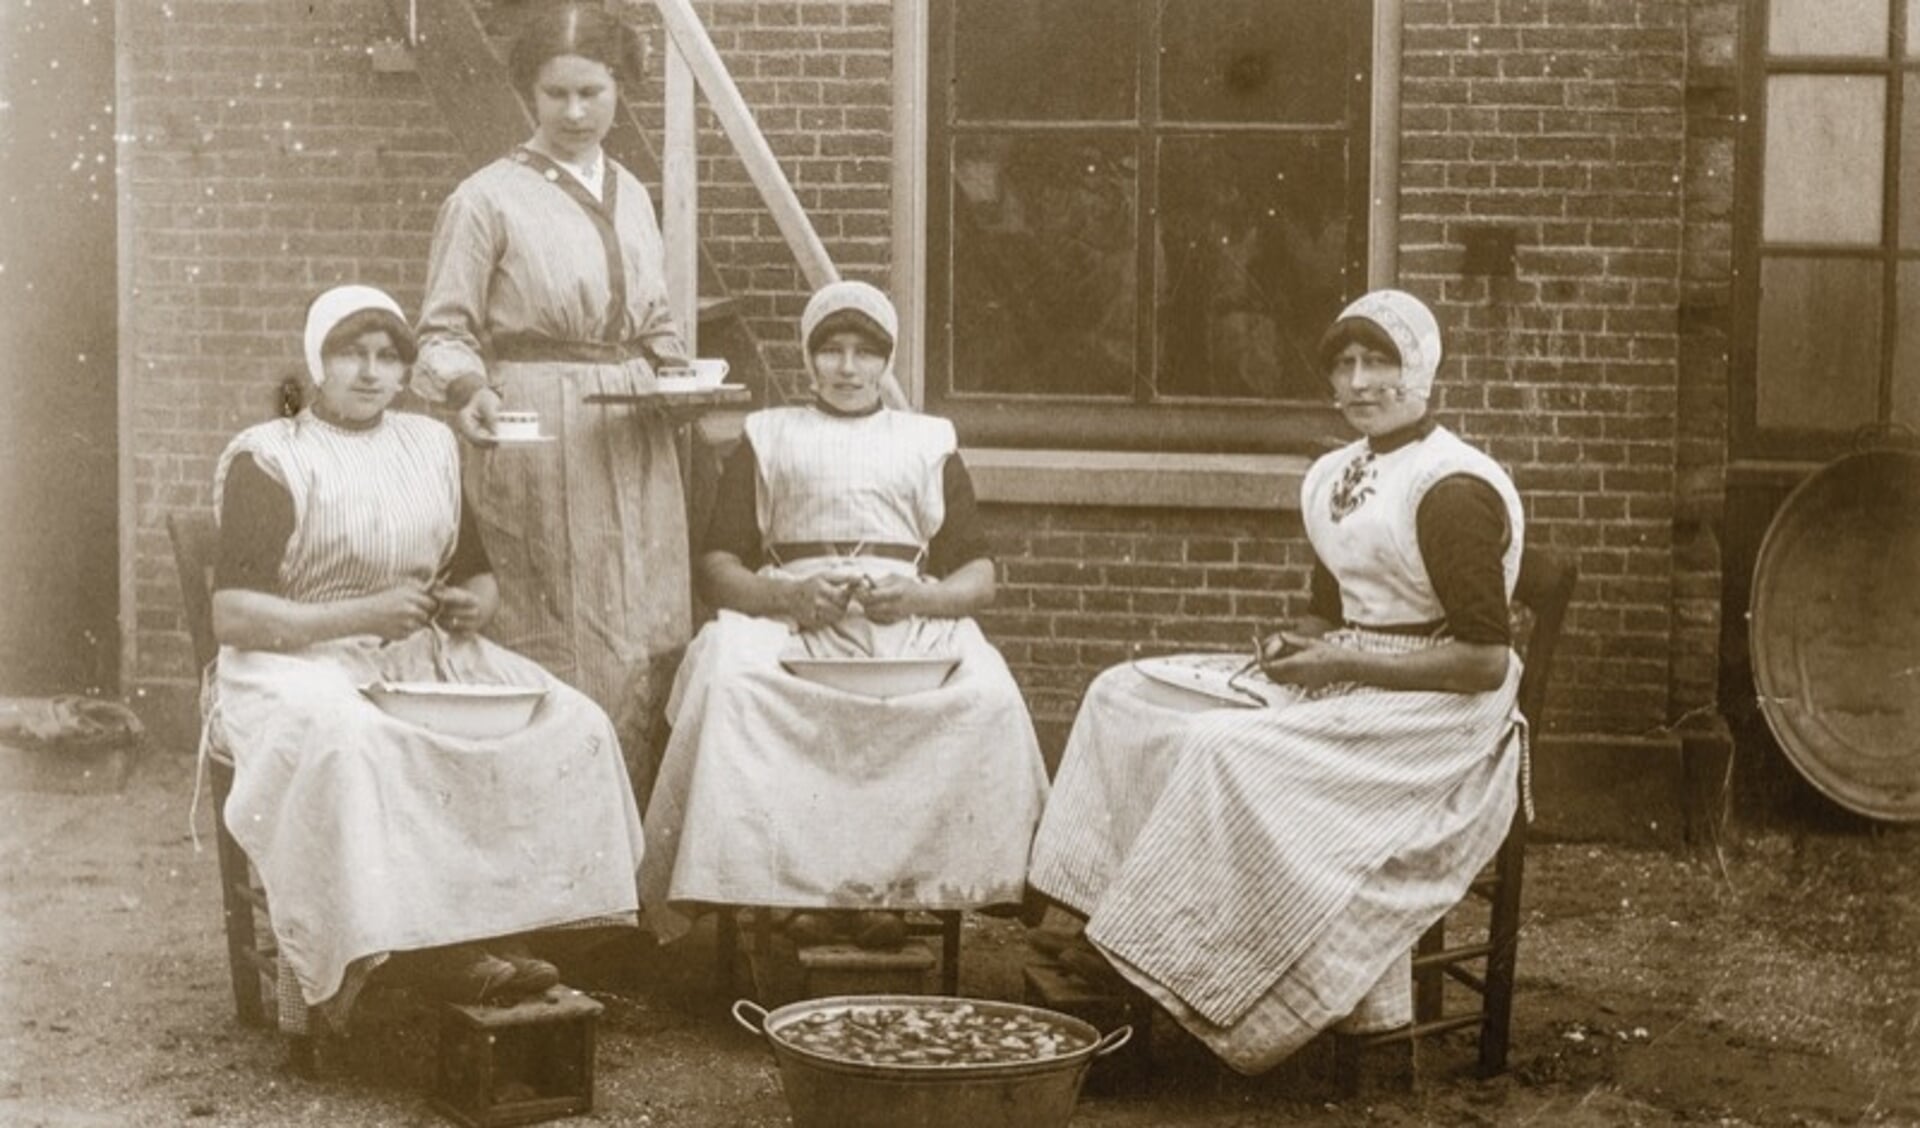 Urker dienstmeisjes schillen aardappels in een koloniehuis.